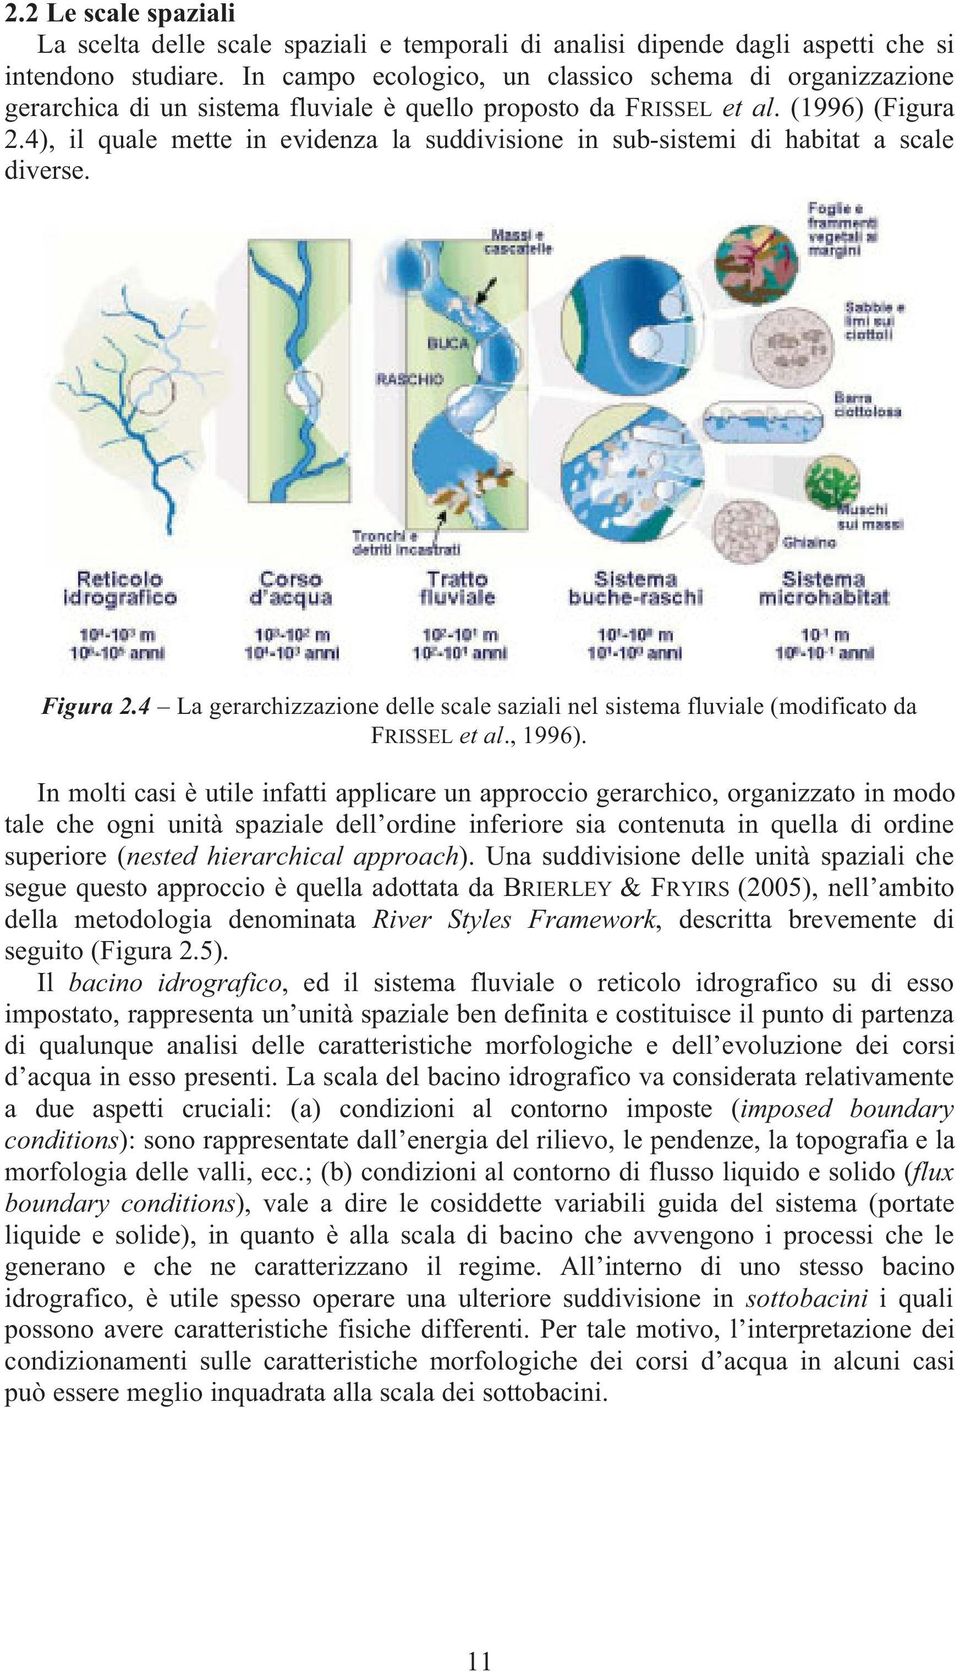 4), il quale mette in evidenza la suddivisione in sub-sistemi di habitat a scale diverse. Figura 2.4 La gerarchizzazione delle scale saziali nel sistema fluviale (modificato da FRISSEL et al., 1996).